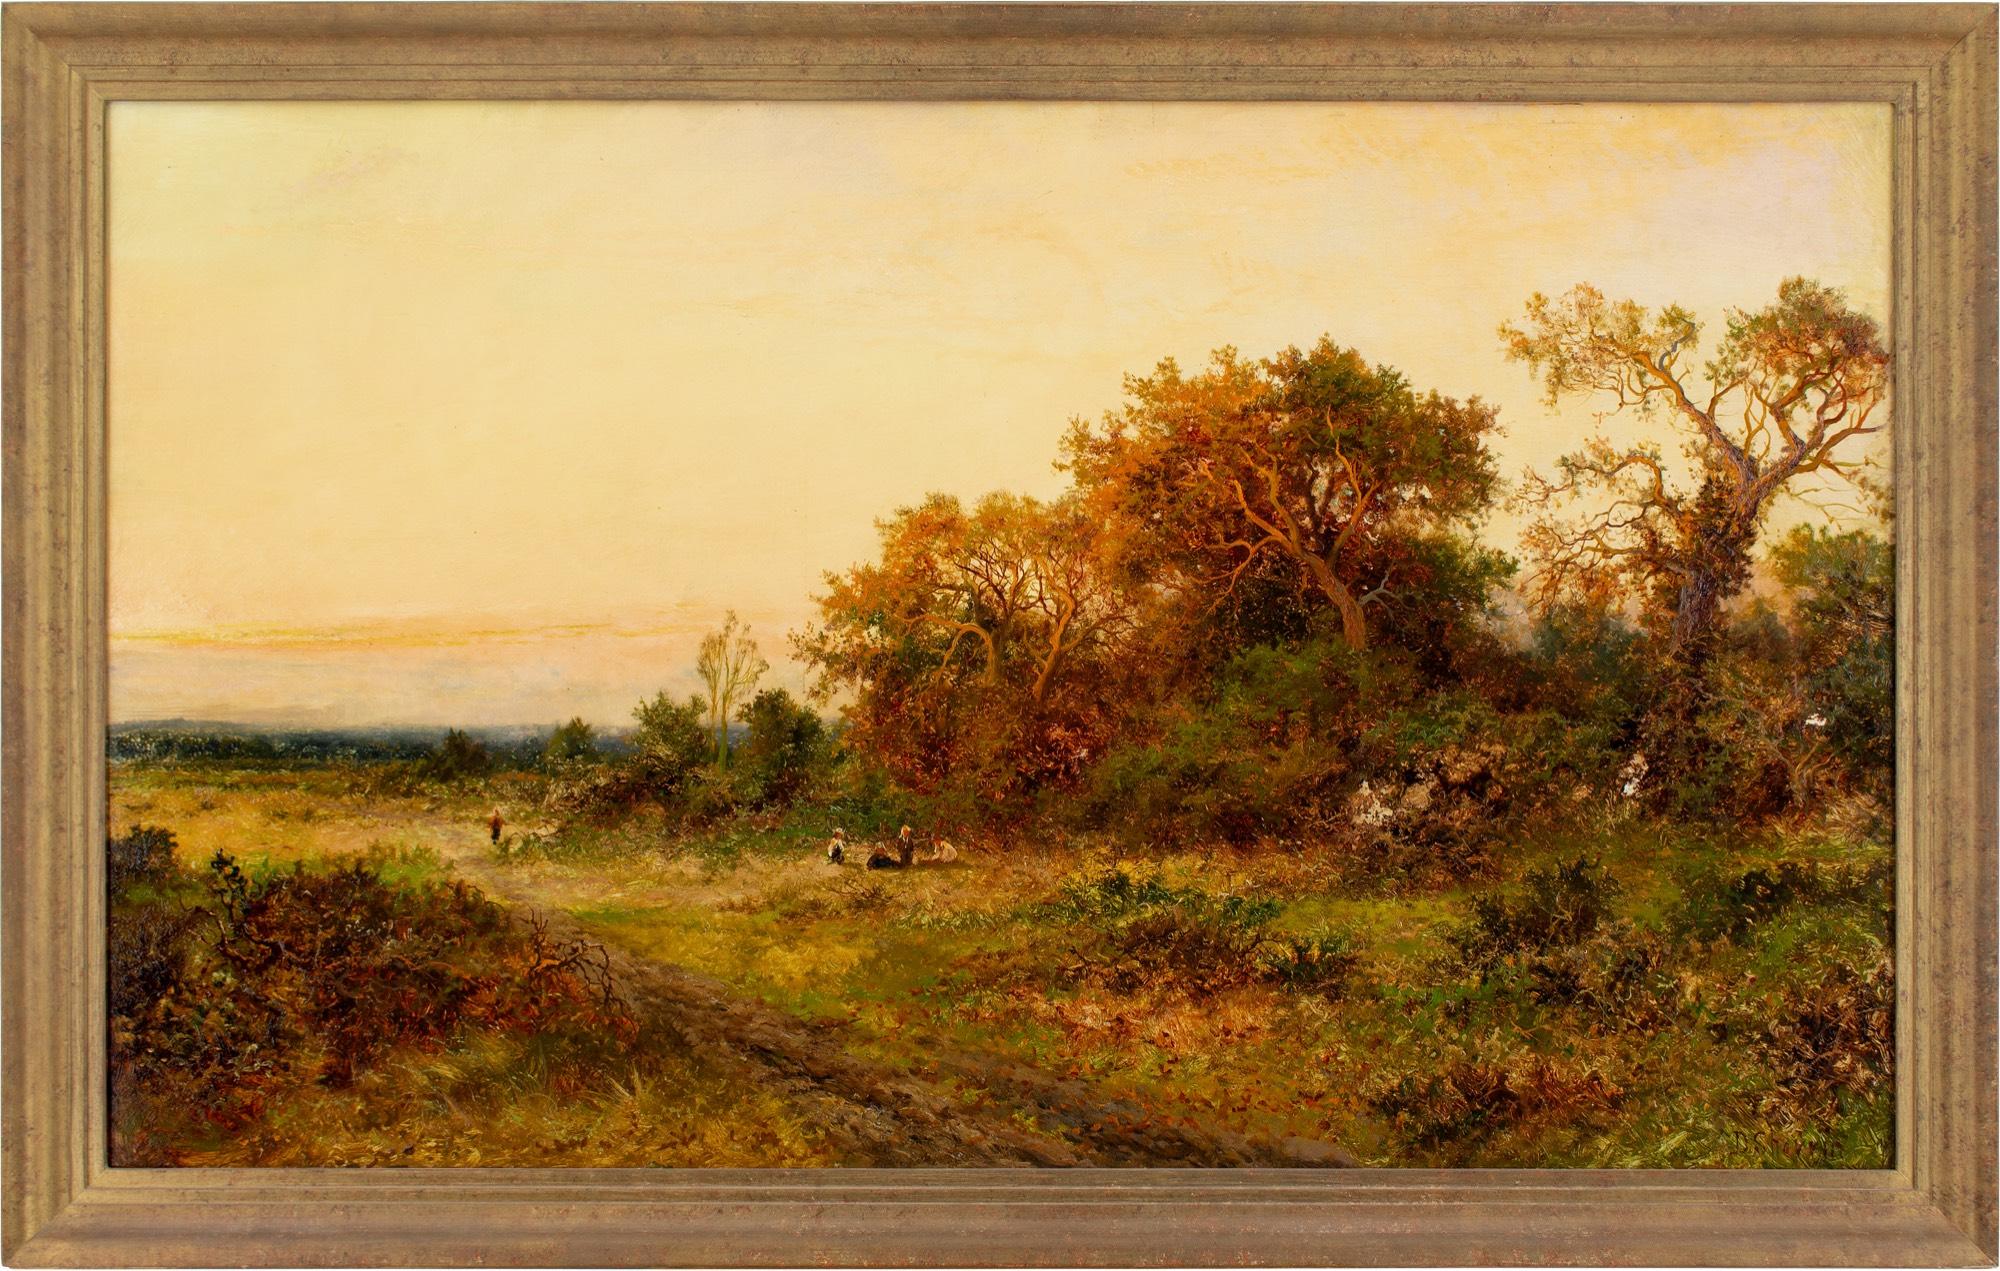 Cette peinture à l'huile automnale du début du XXe siècle, réalisée par l'artiste britannique Daniel Sherrin (1869-1940), représente un paysage de lande accidenté sous la lueur du soleil couchant.

Sherrin était un peintre accompli de paysages et de